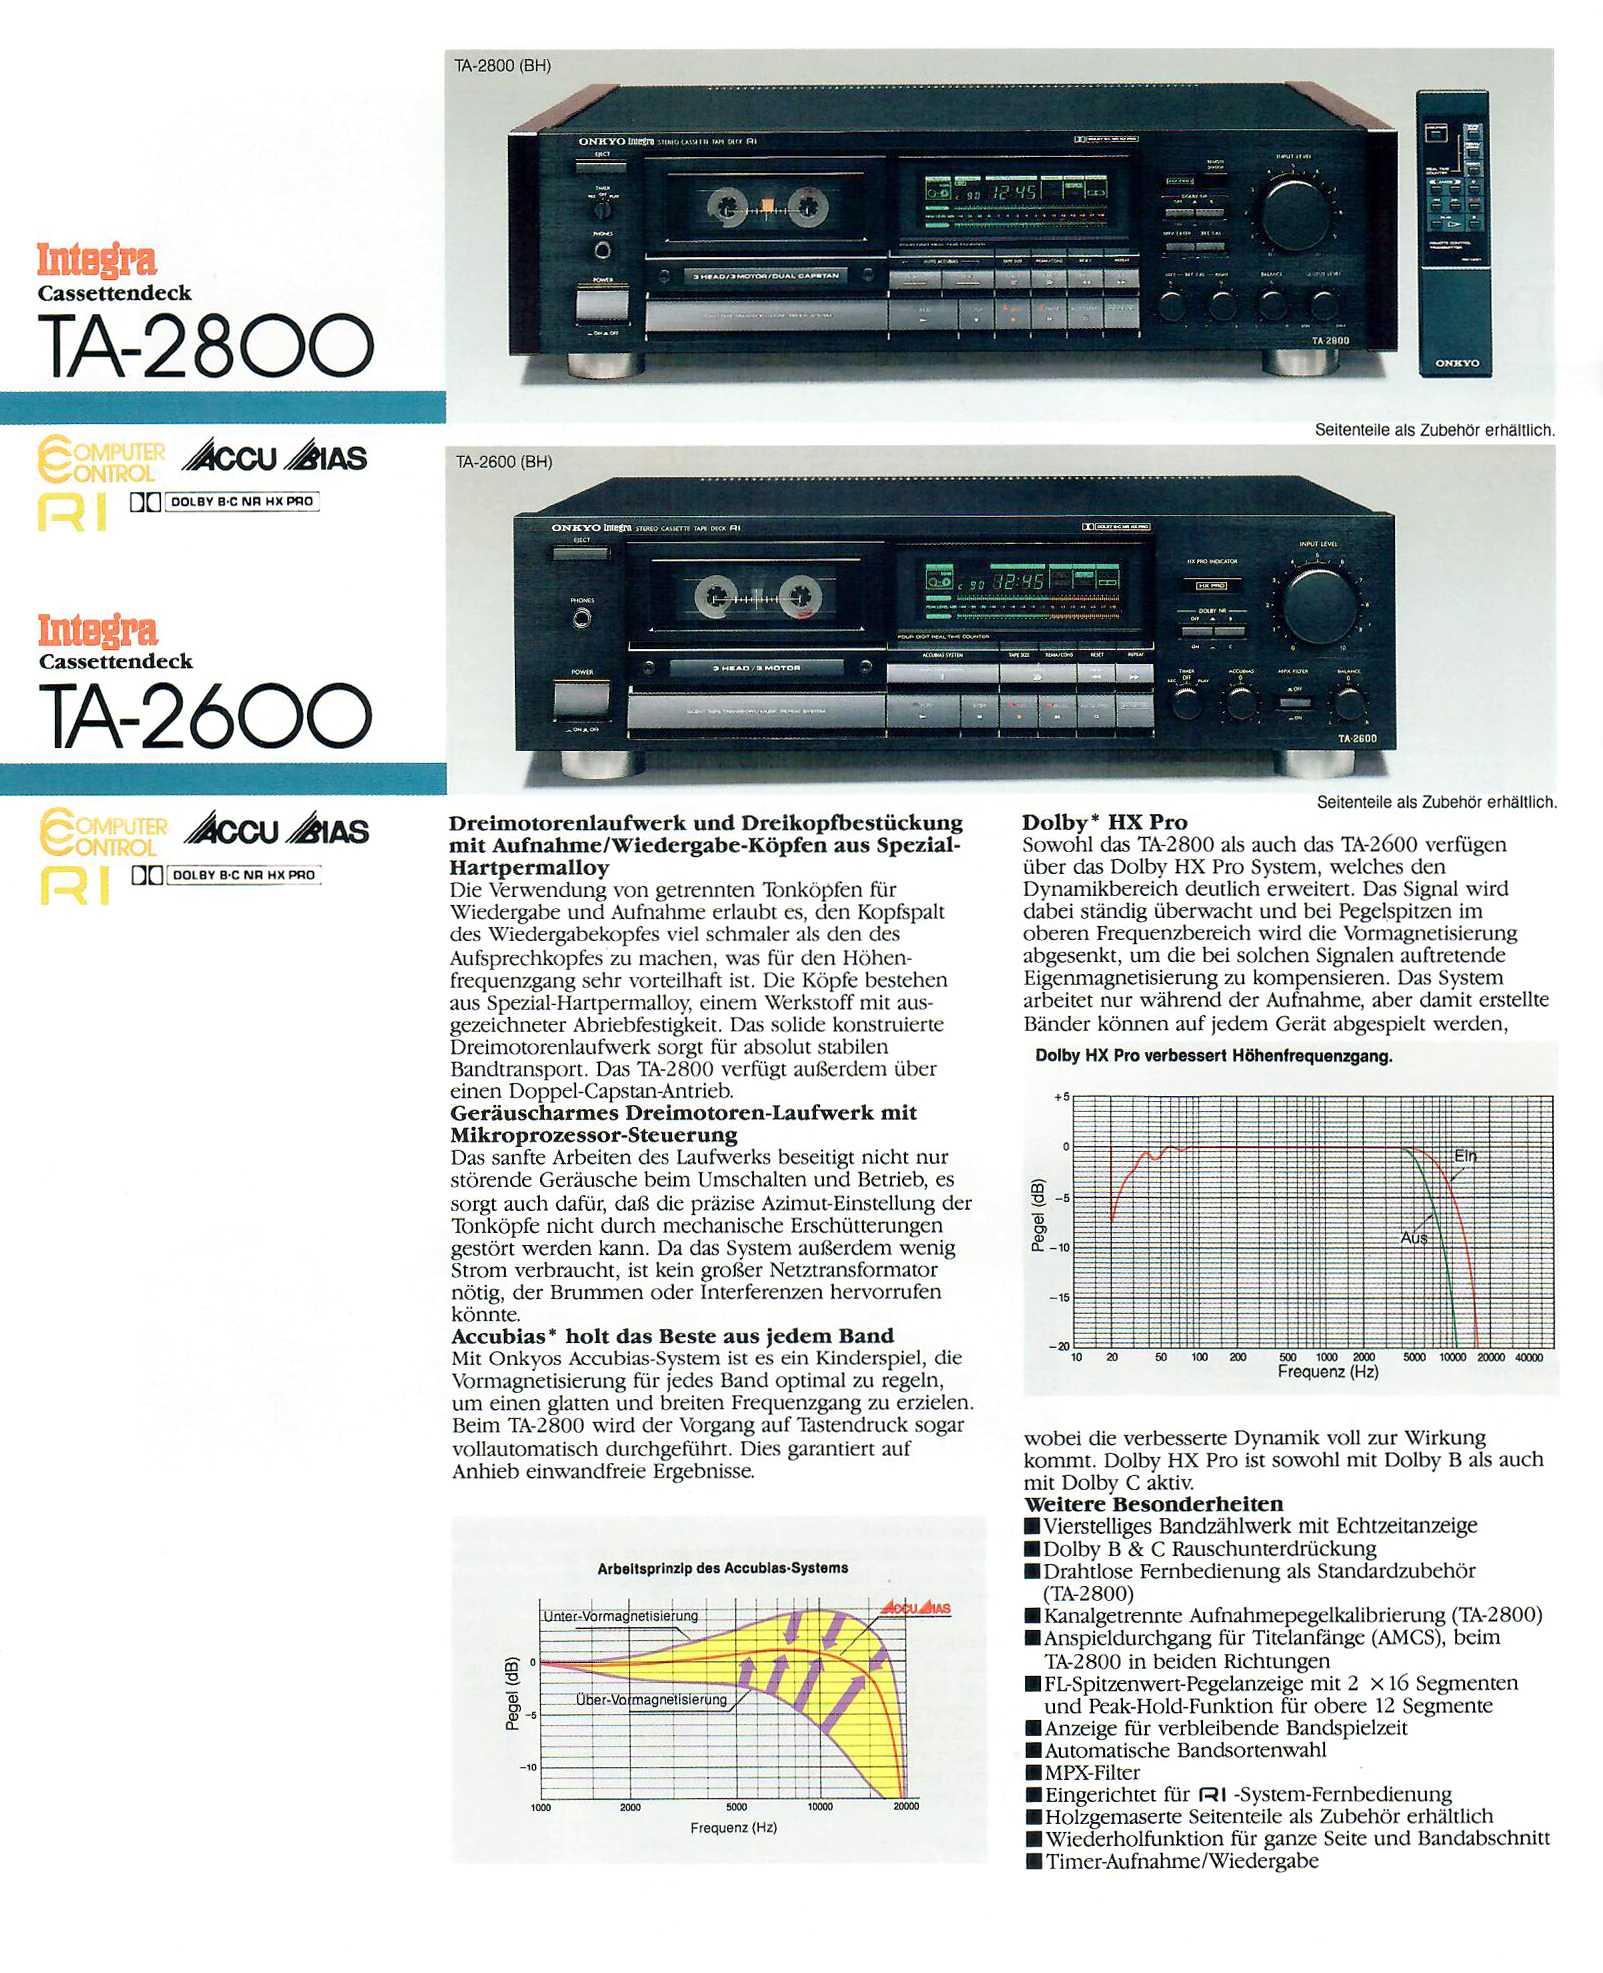 Onkyo TA-2600-2800-Prospekt-1988.jpg